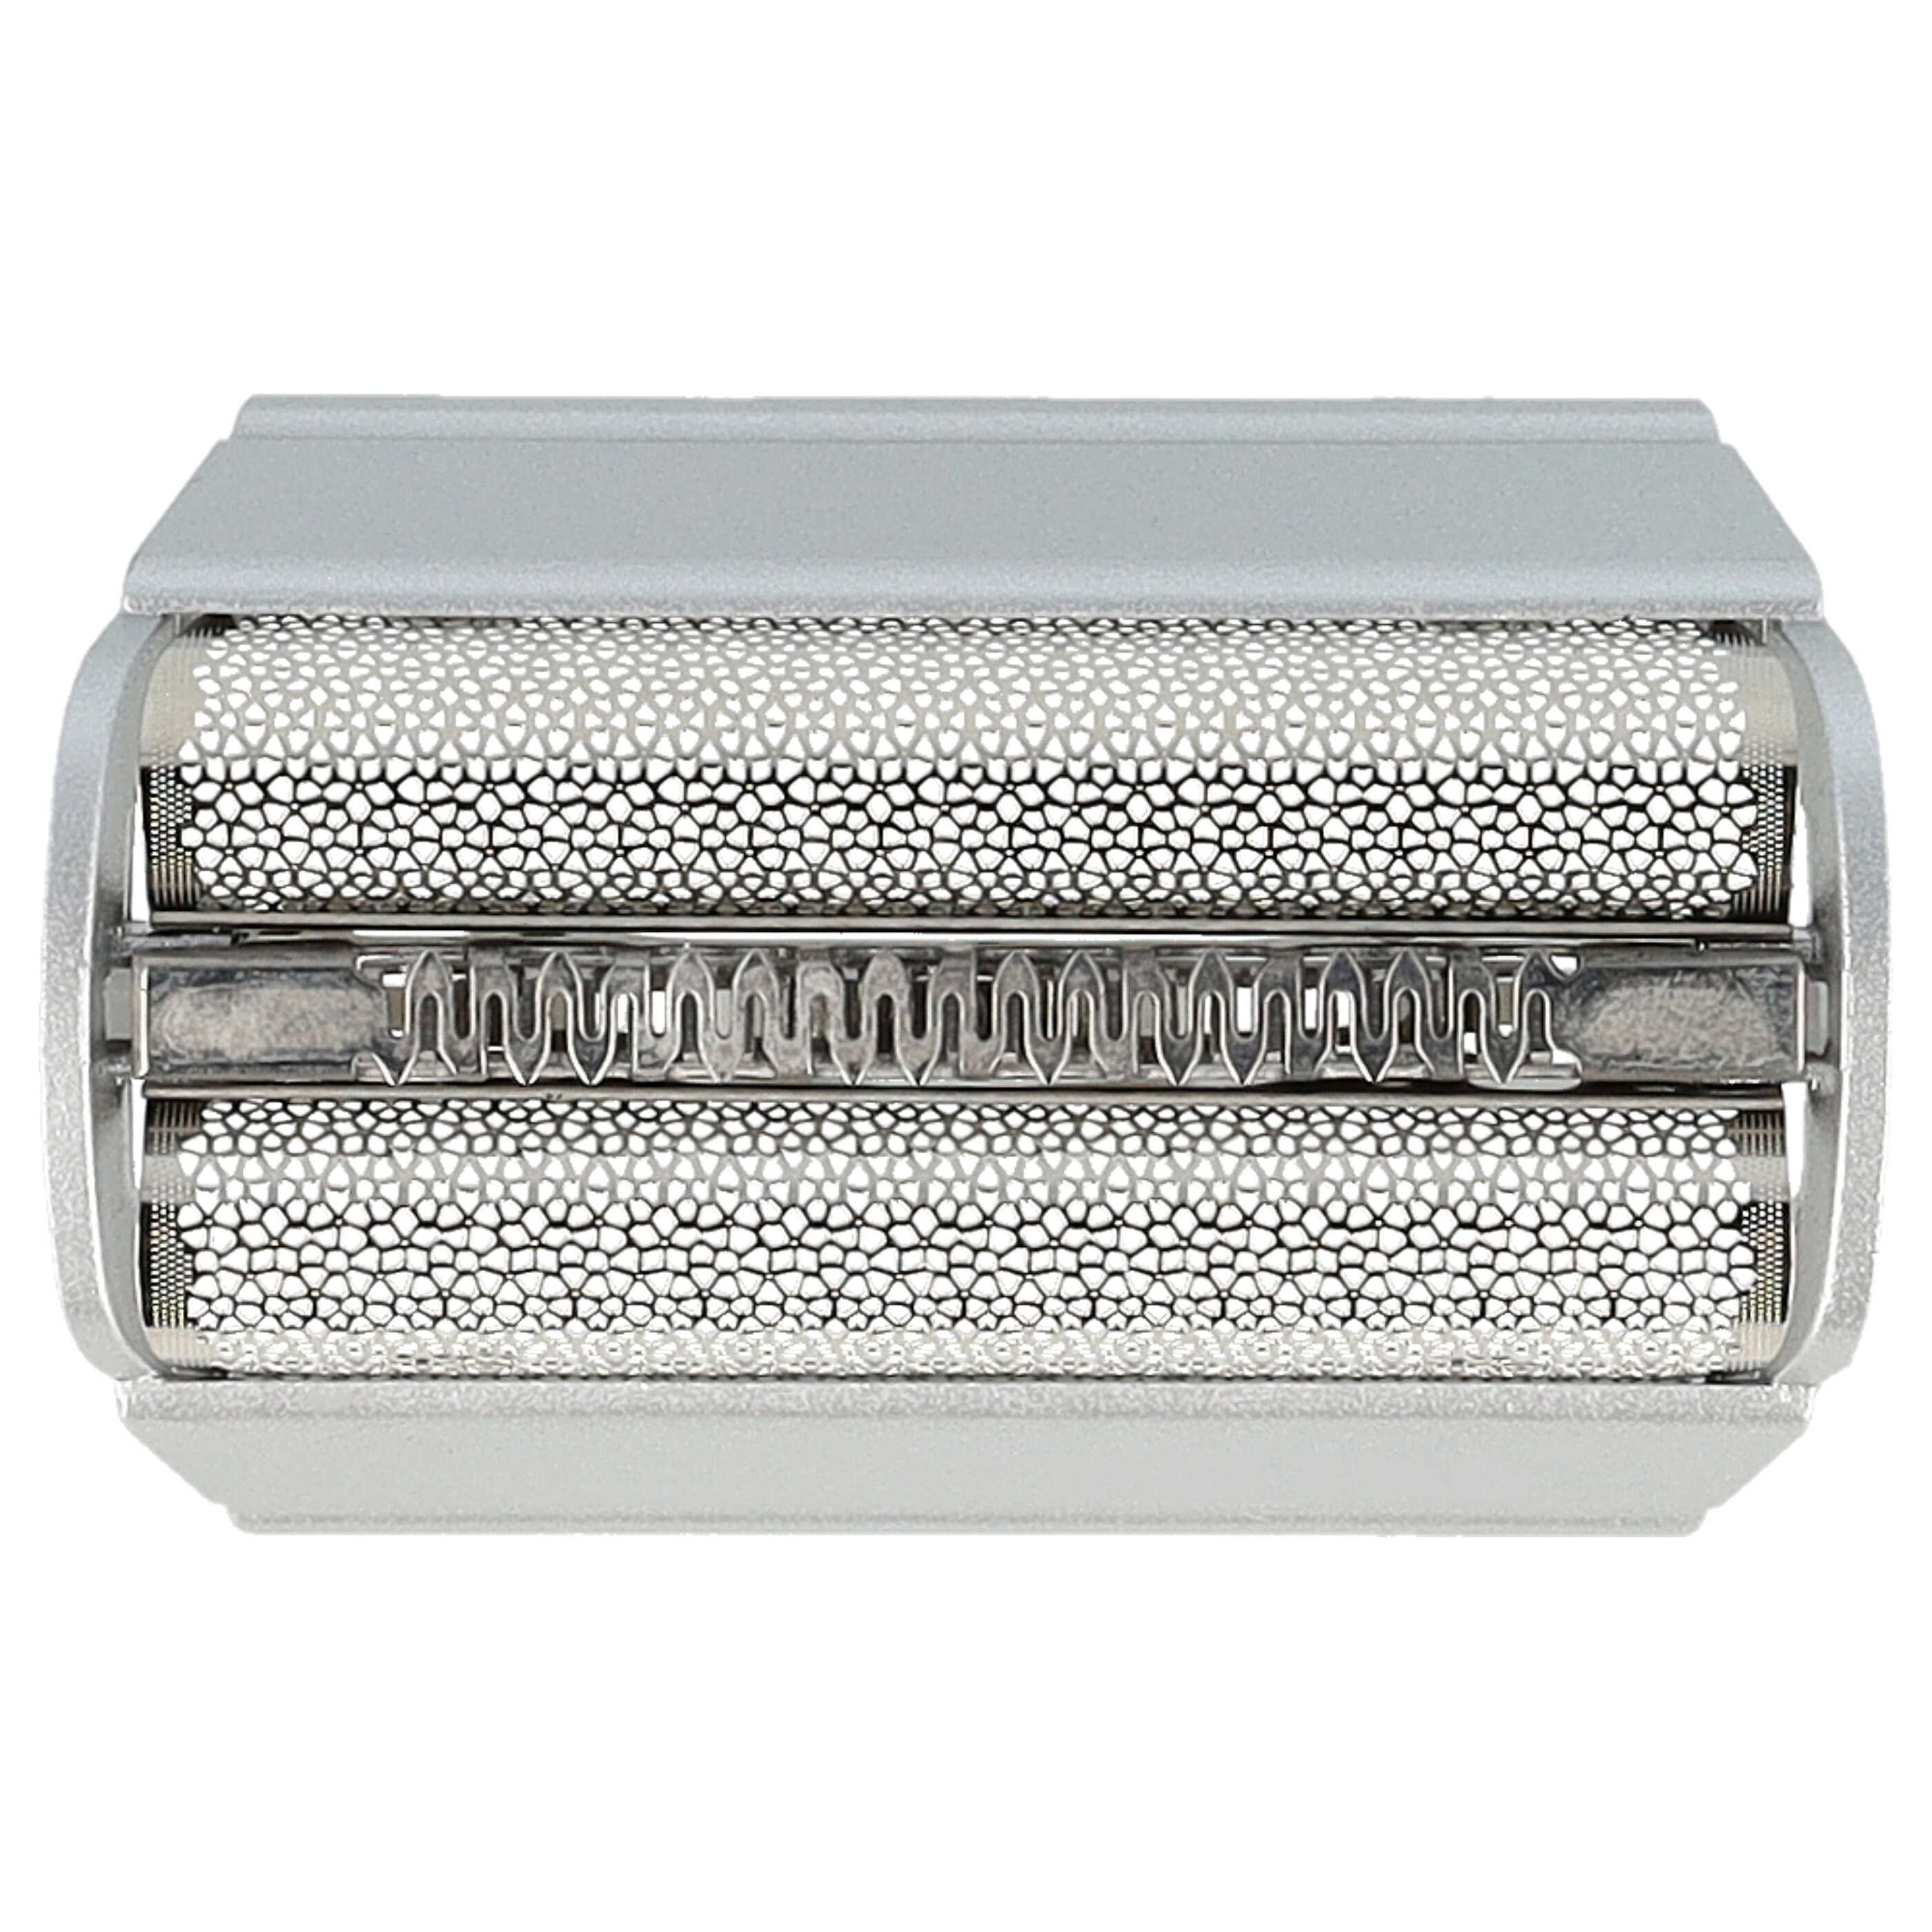 Doble hoja de corte reemplaza Braun SB505, 31B, 31S para afeitadoras Braun - incl. marco, plata